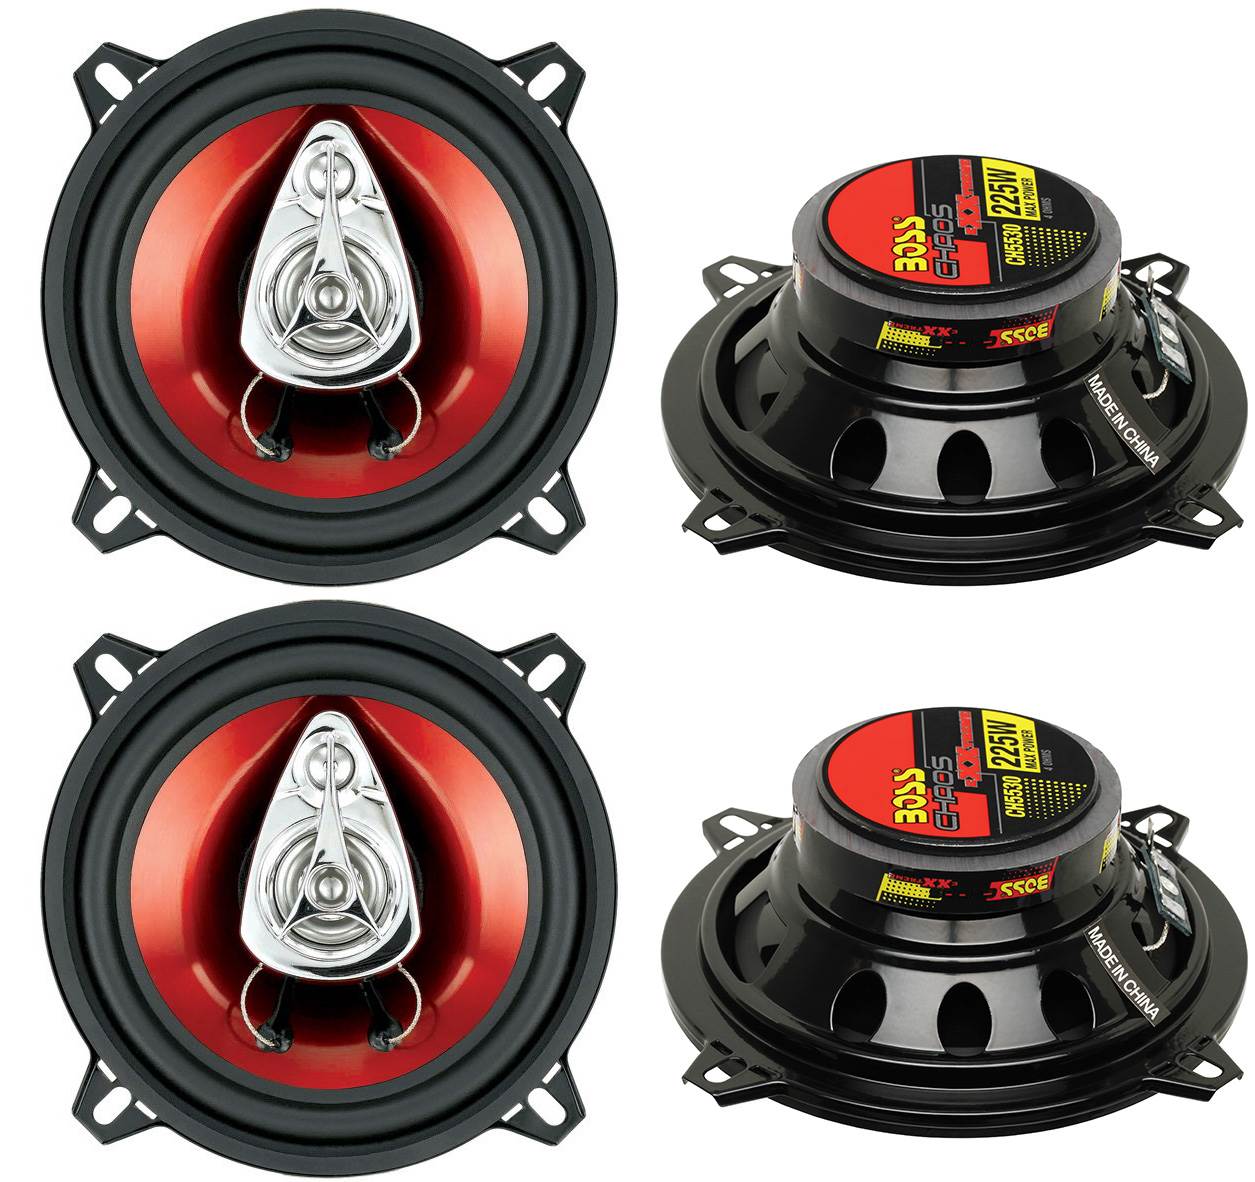 CH6530 6.5 300W 3 Way Car Coaxial Speakers BOSS CH5530 5.25 3-Way 225W 2